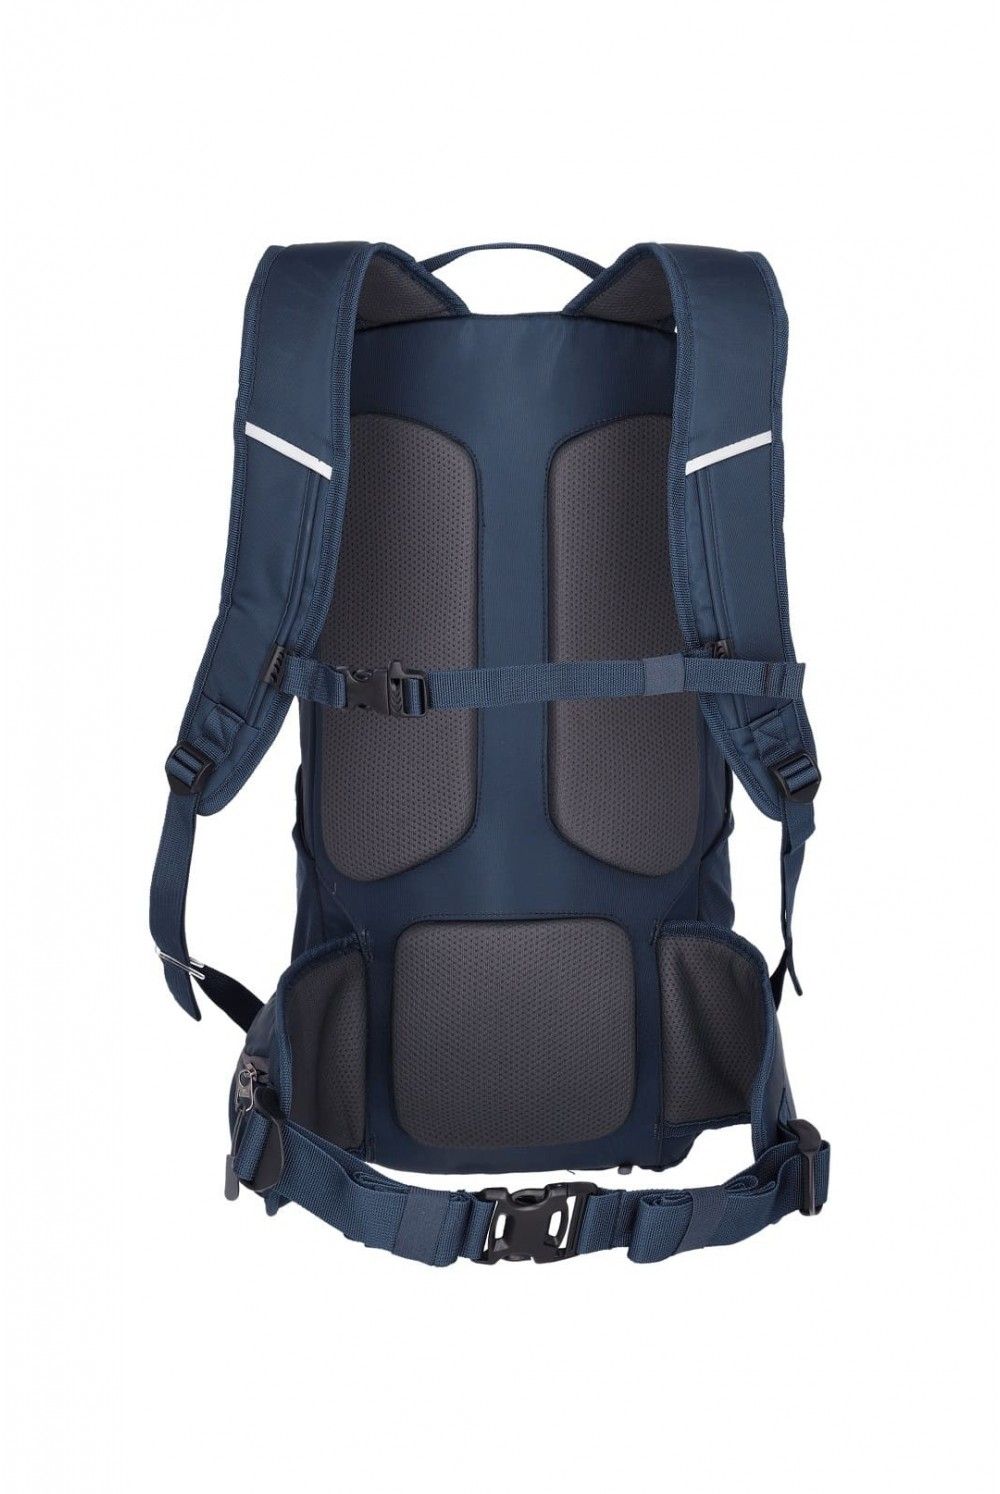 Hiking backpack Travelite Offlite 20 liters